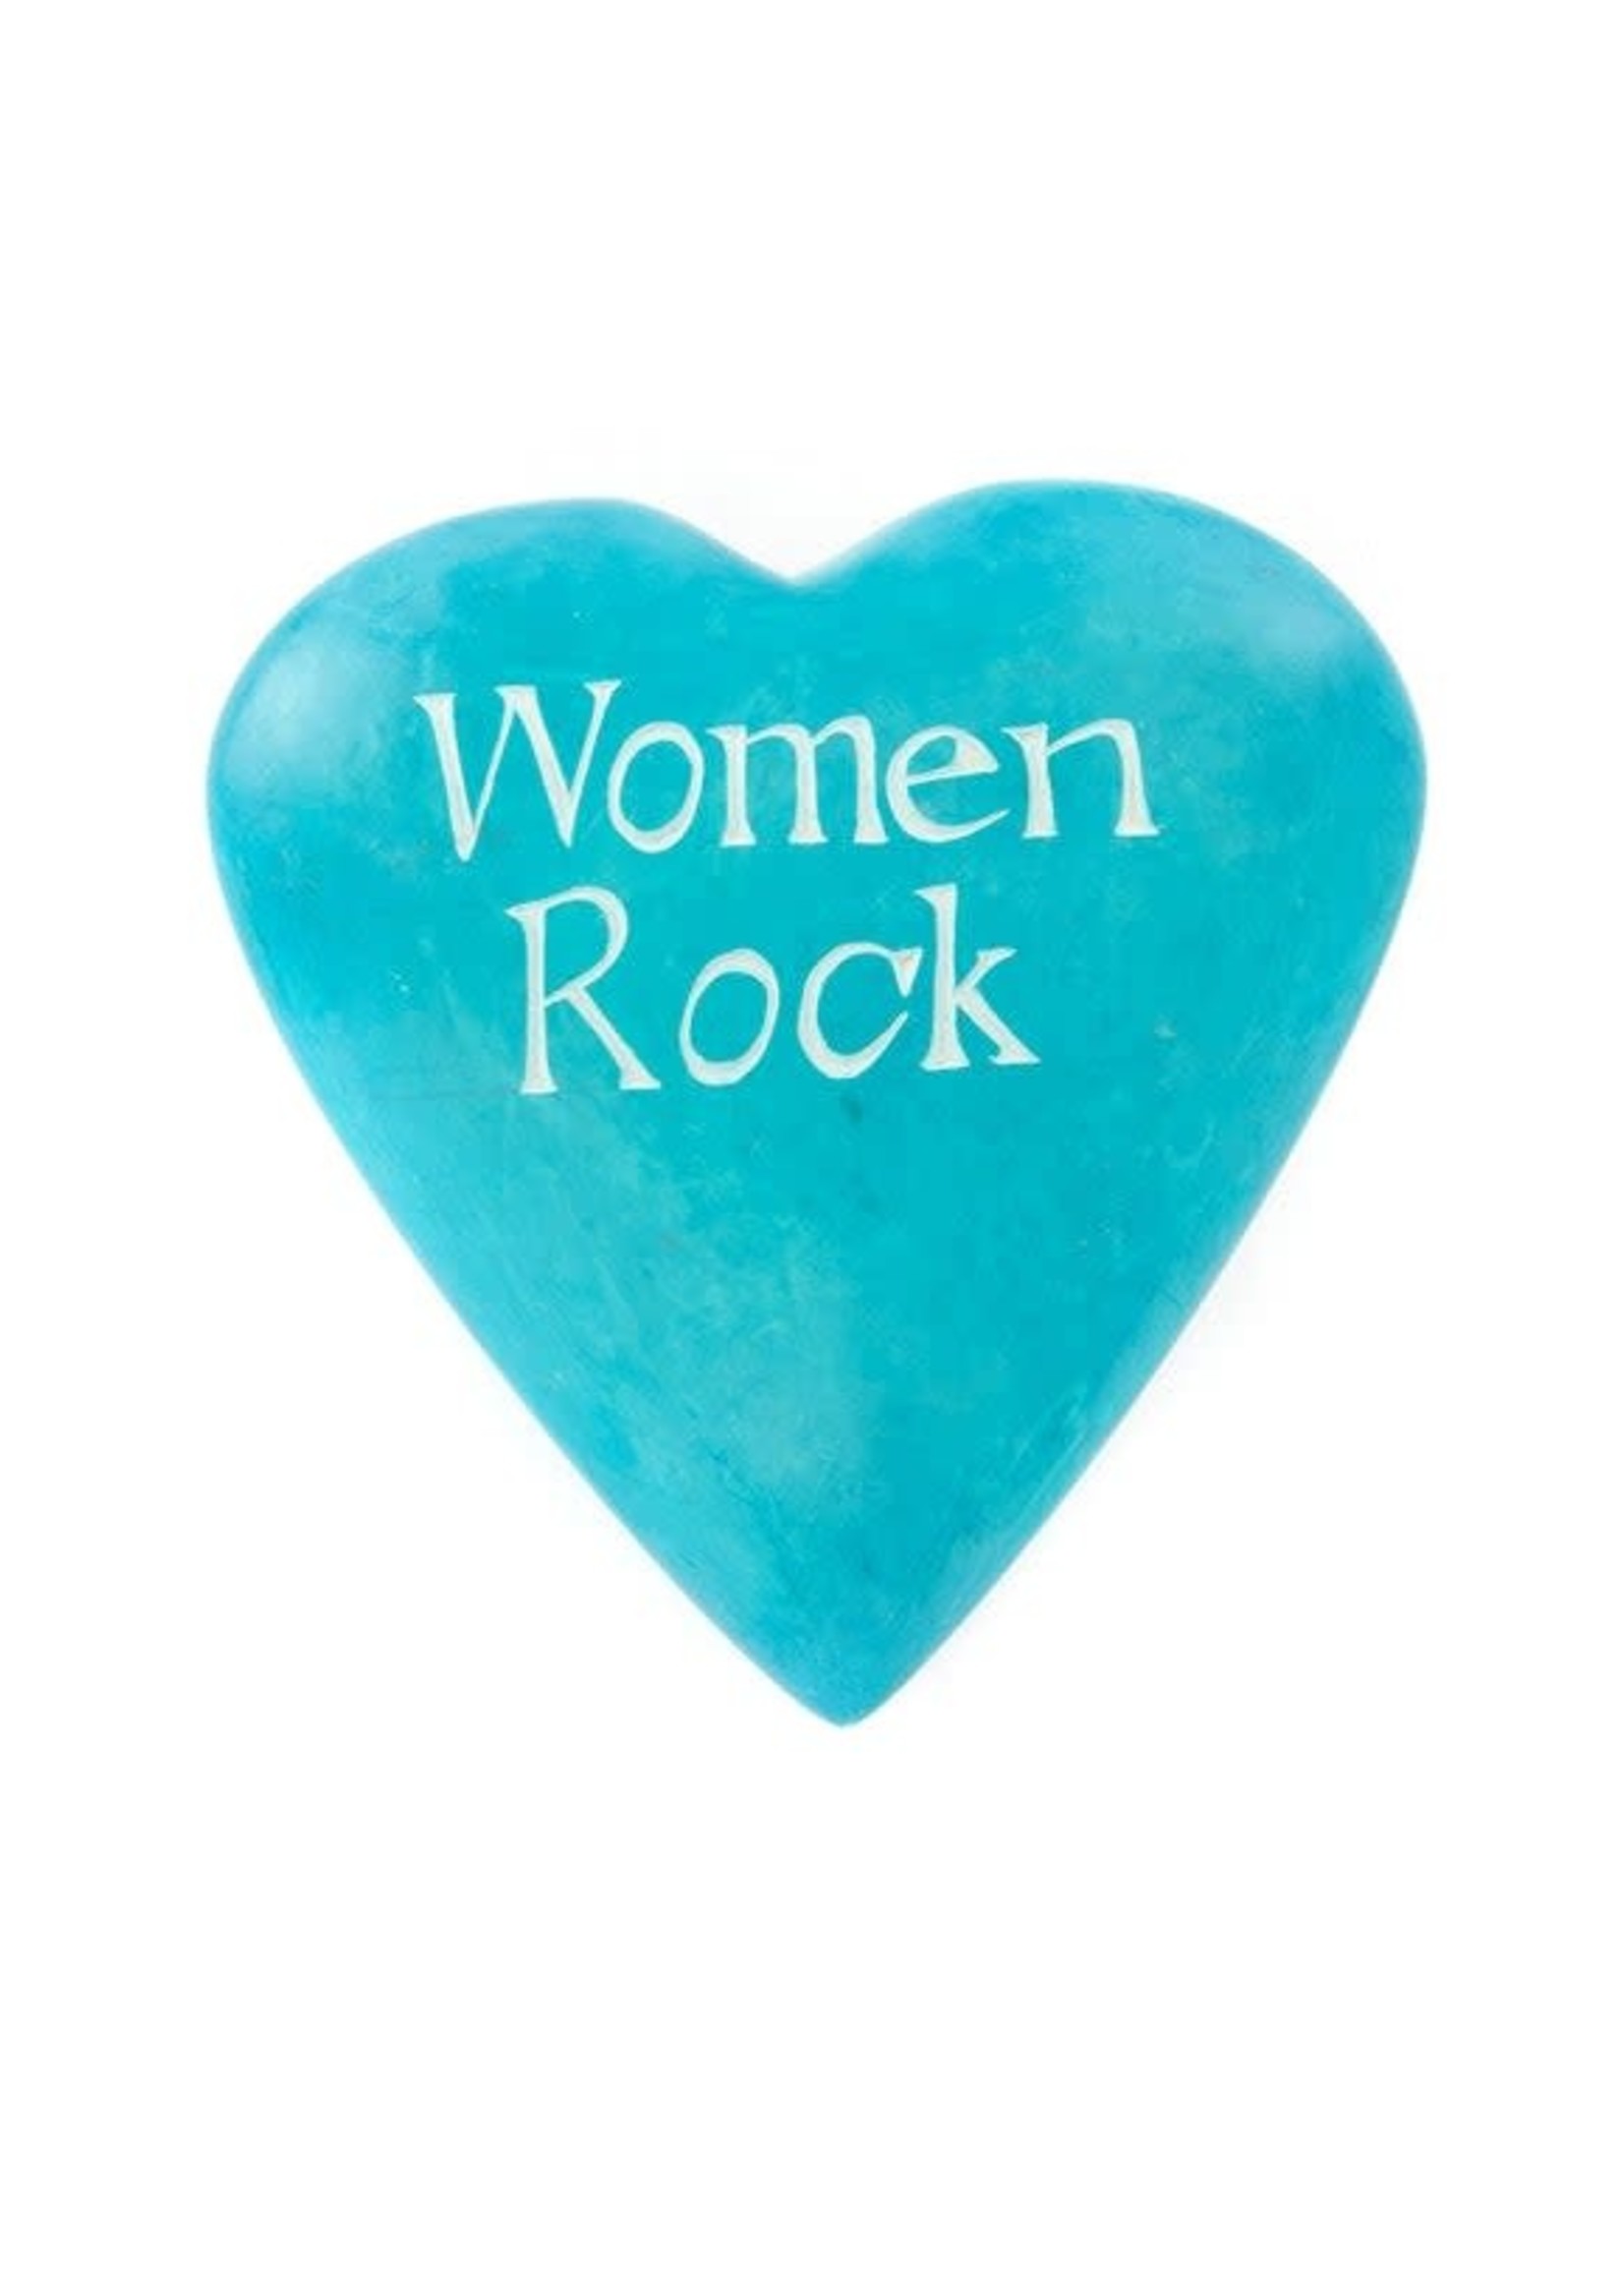 Soapstone Heart Large - Women Rock Blue